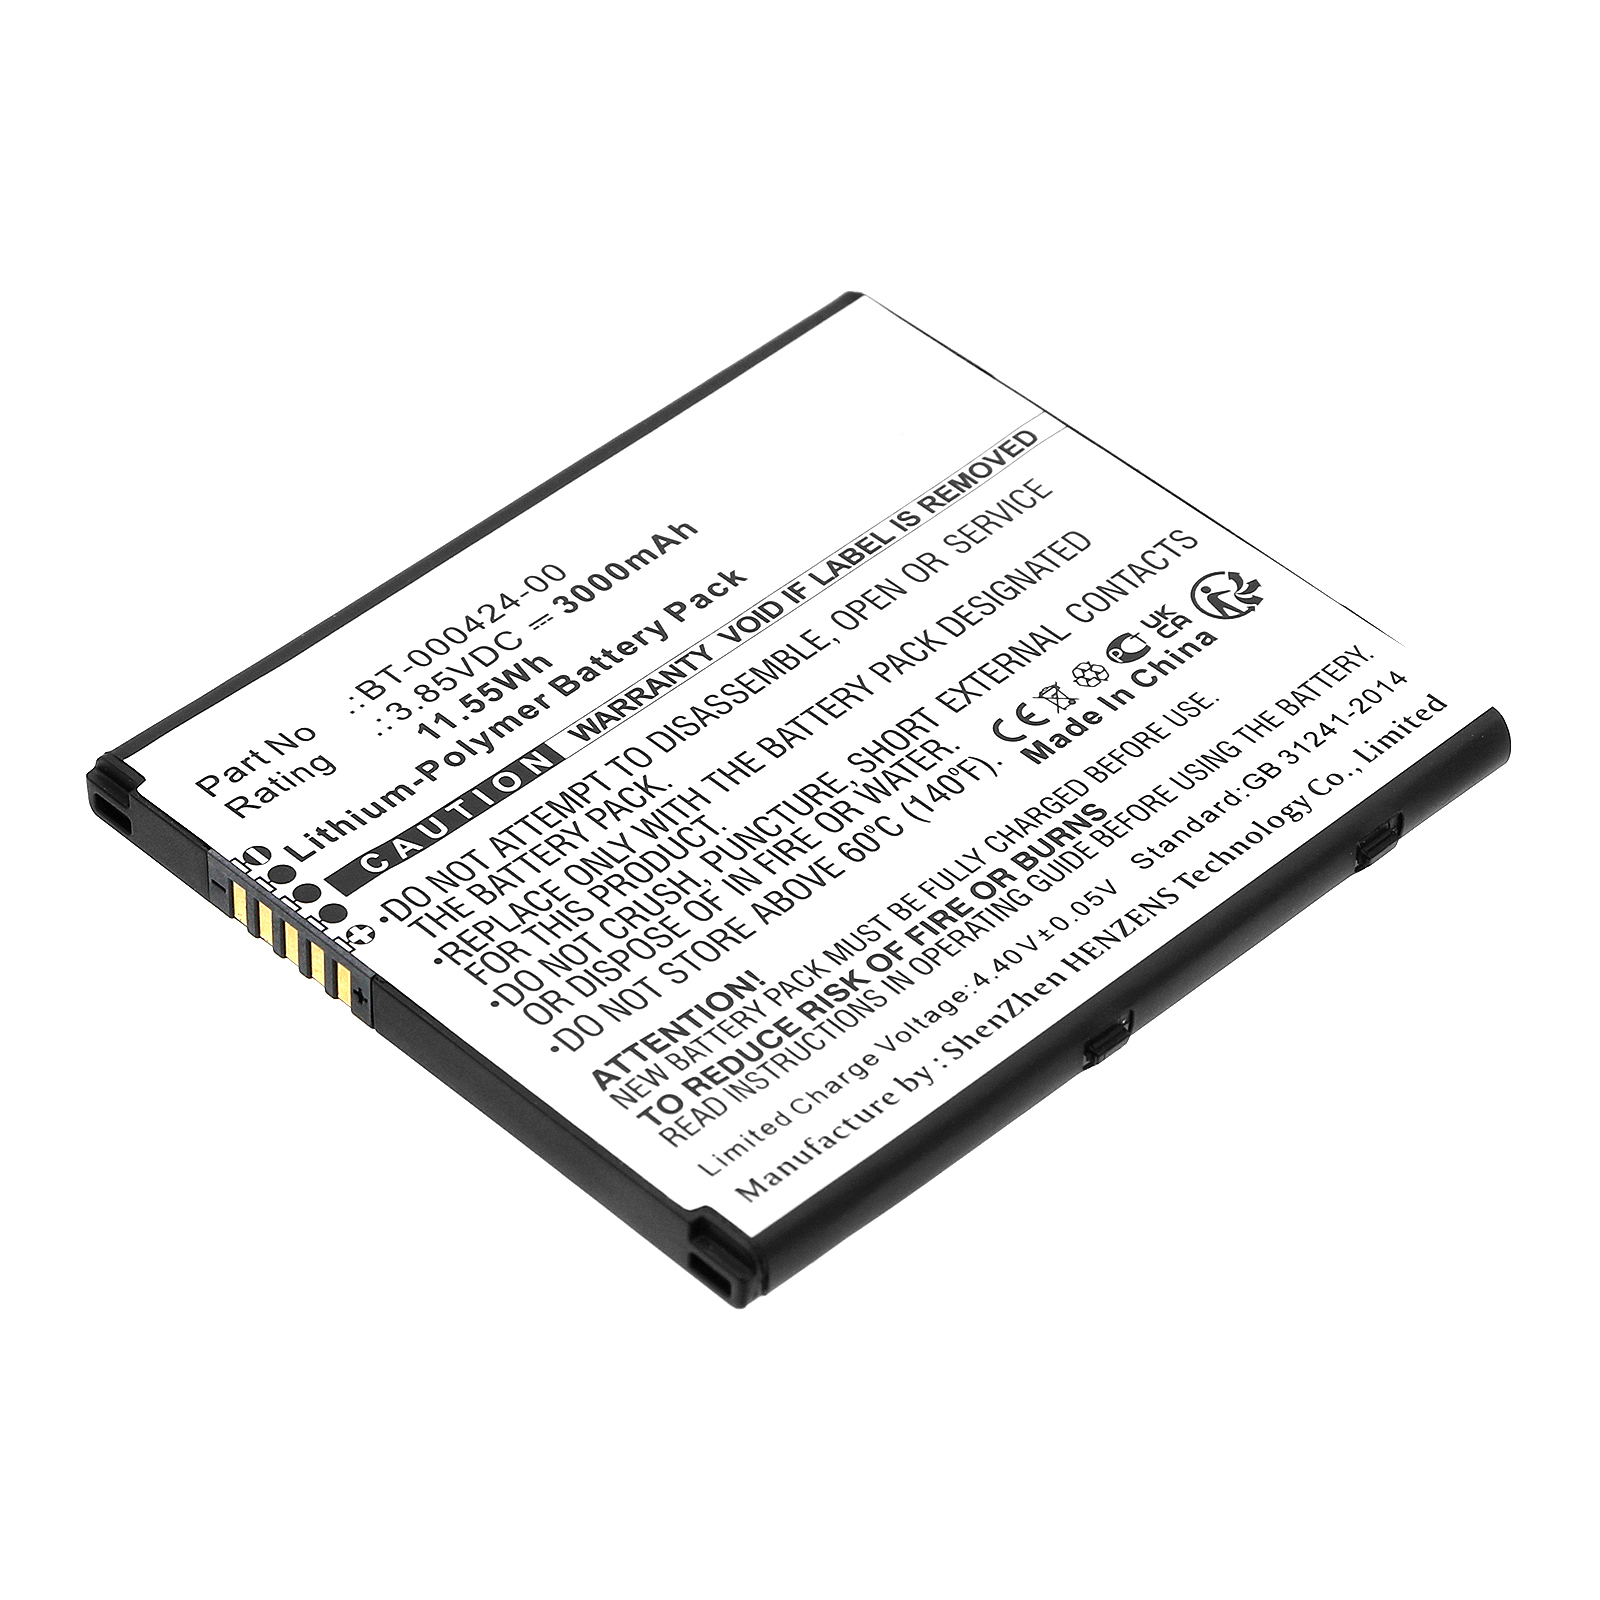 Synergy Digital Barcode Scanner Battery, Compatible with Zebra BT-000424-00 Barcode Scanner Battery (Li-Pol, 3.85V, 3000mAh)